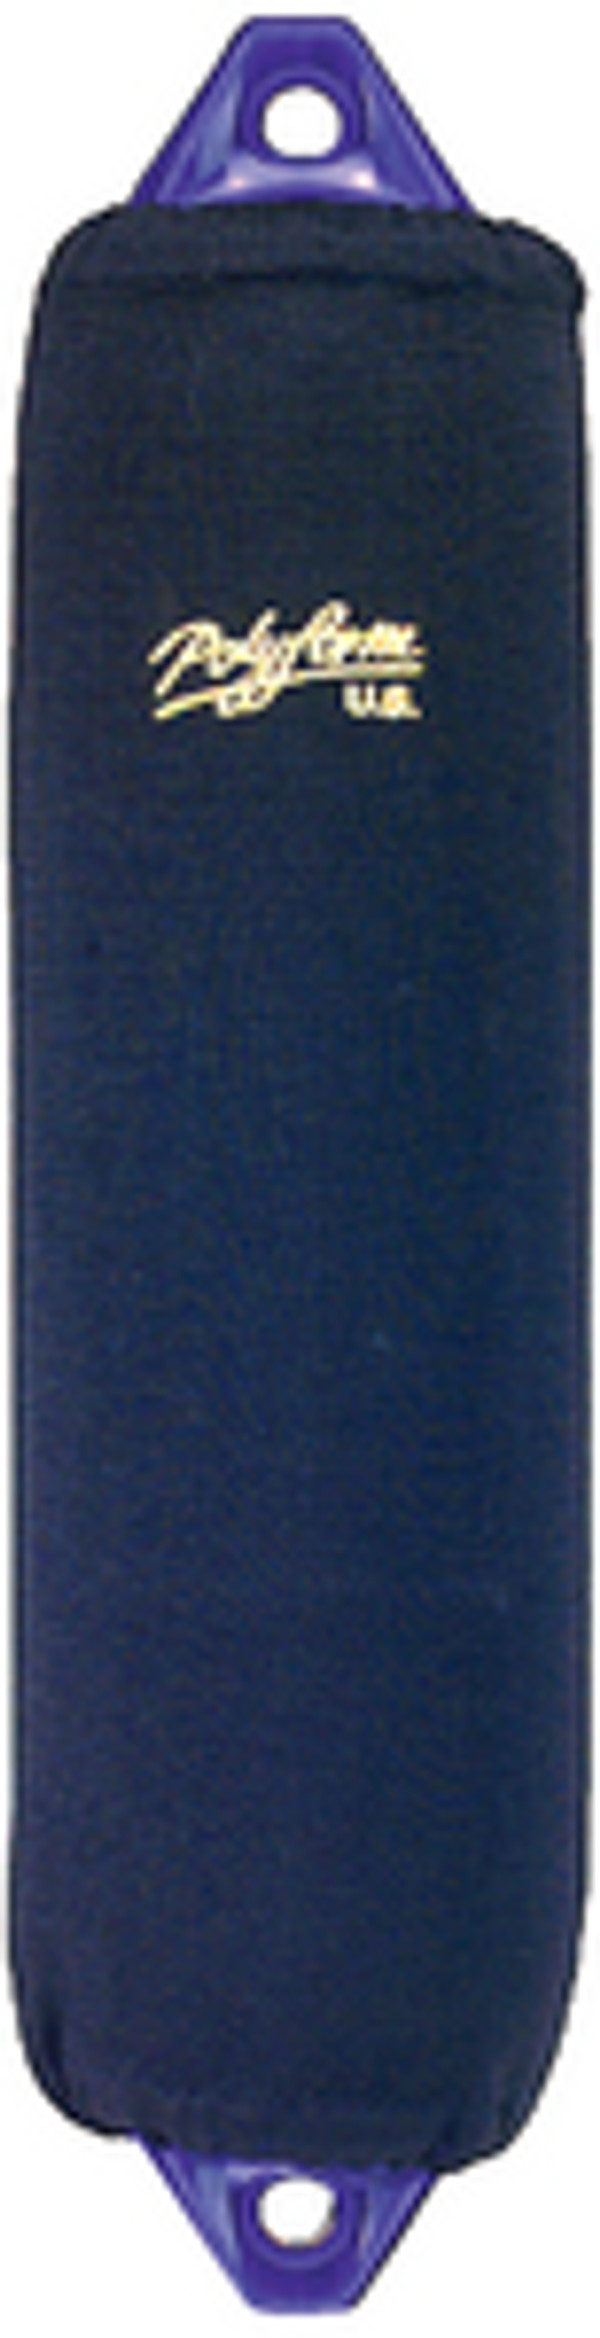 POLYFORM 25-682-925 FENDER COVER BLUE HTM4